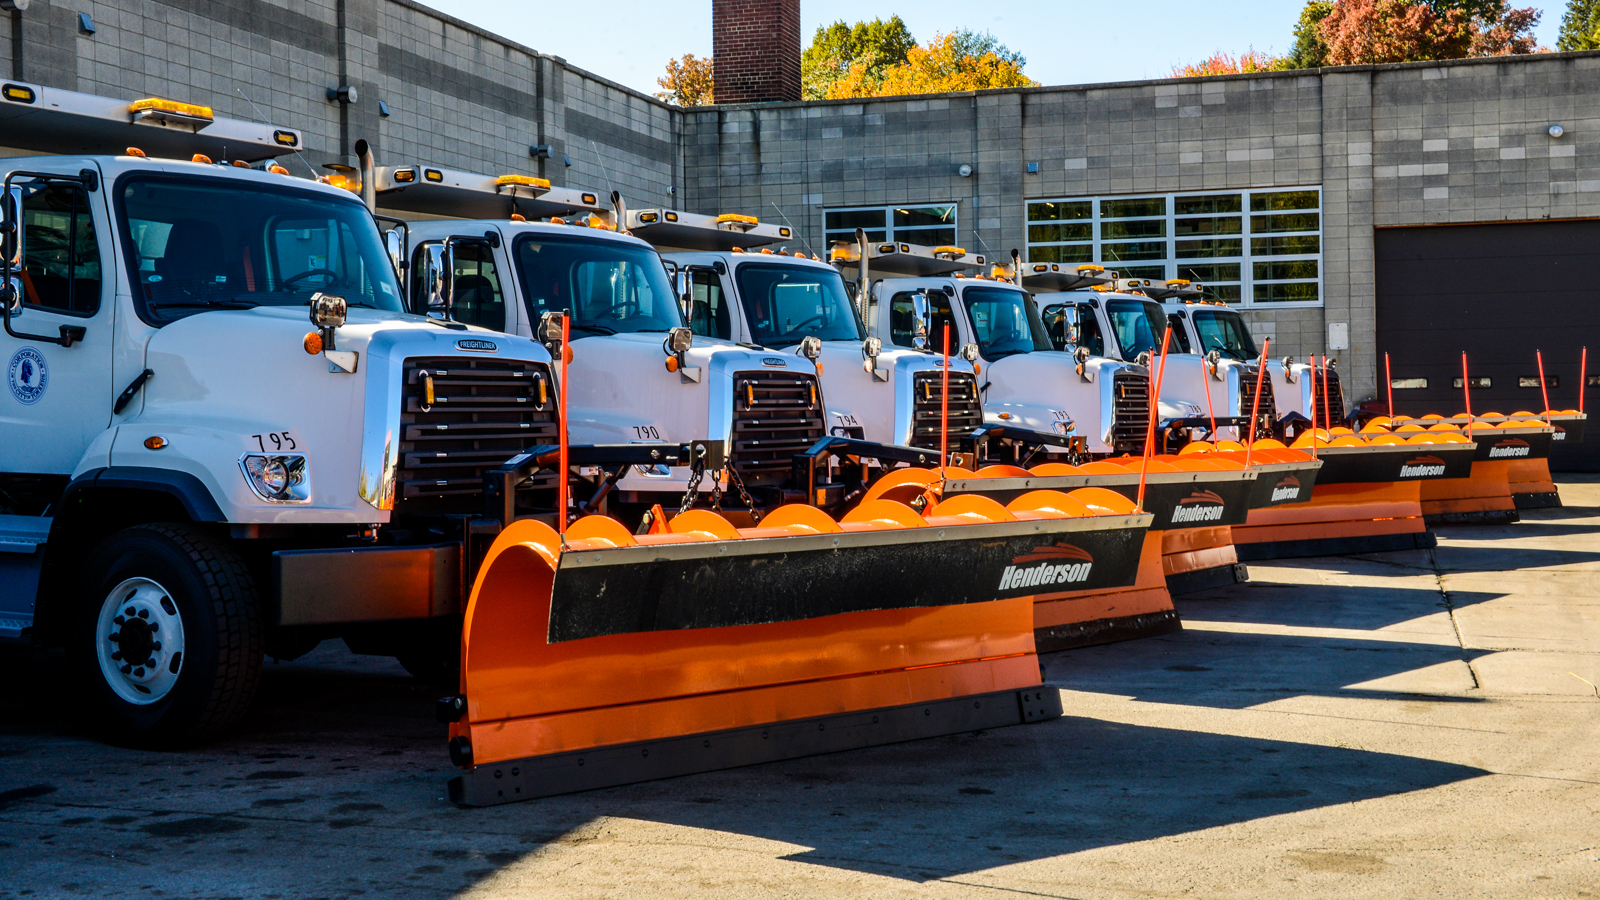 Fleet of snow plow trucks